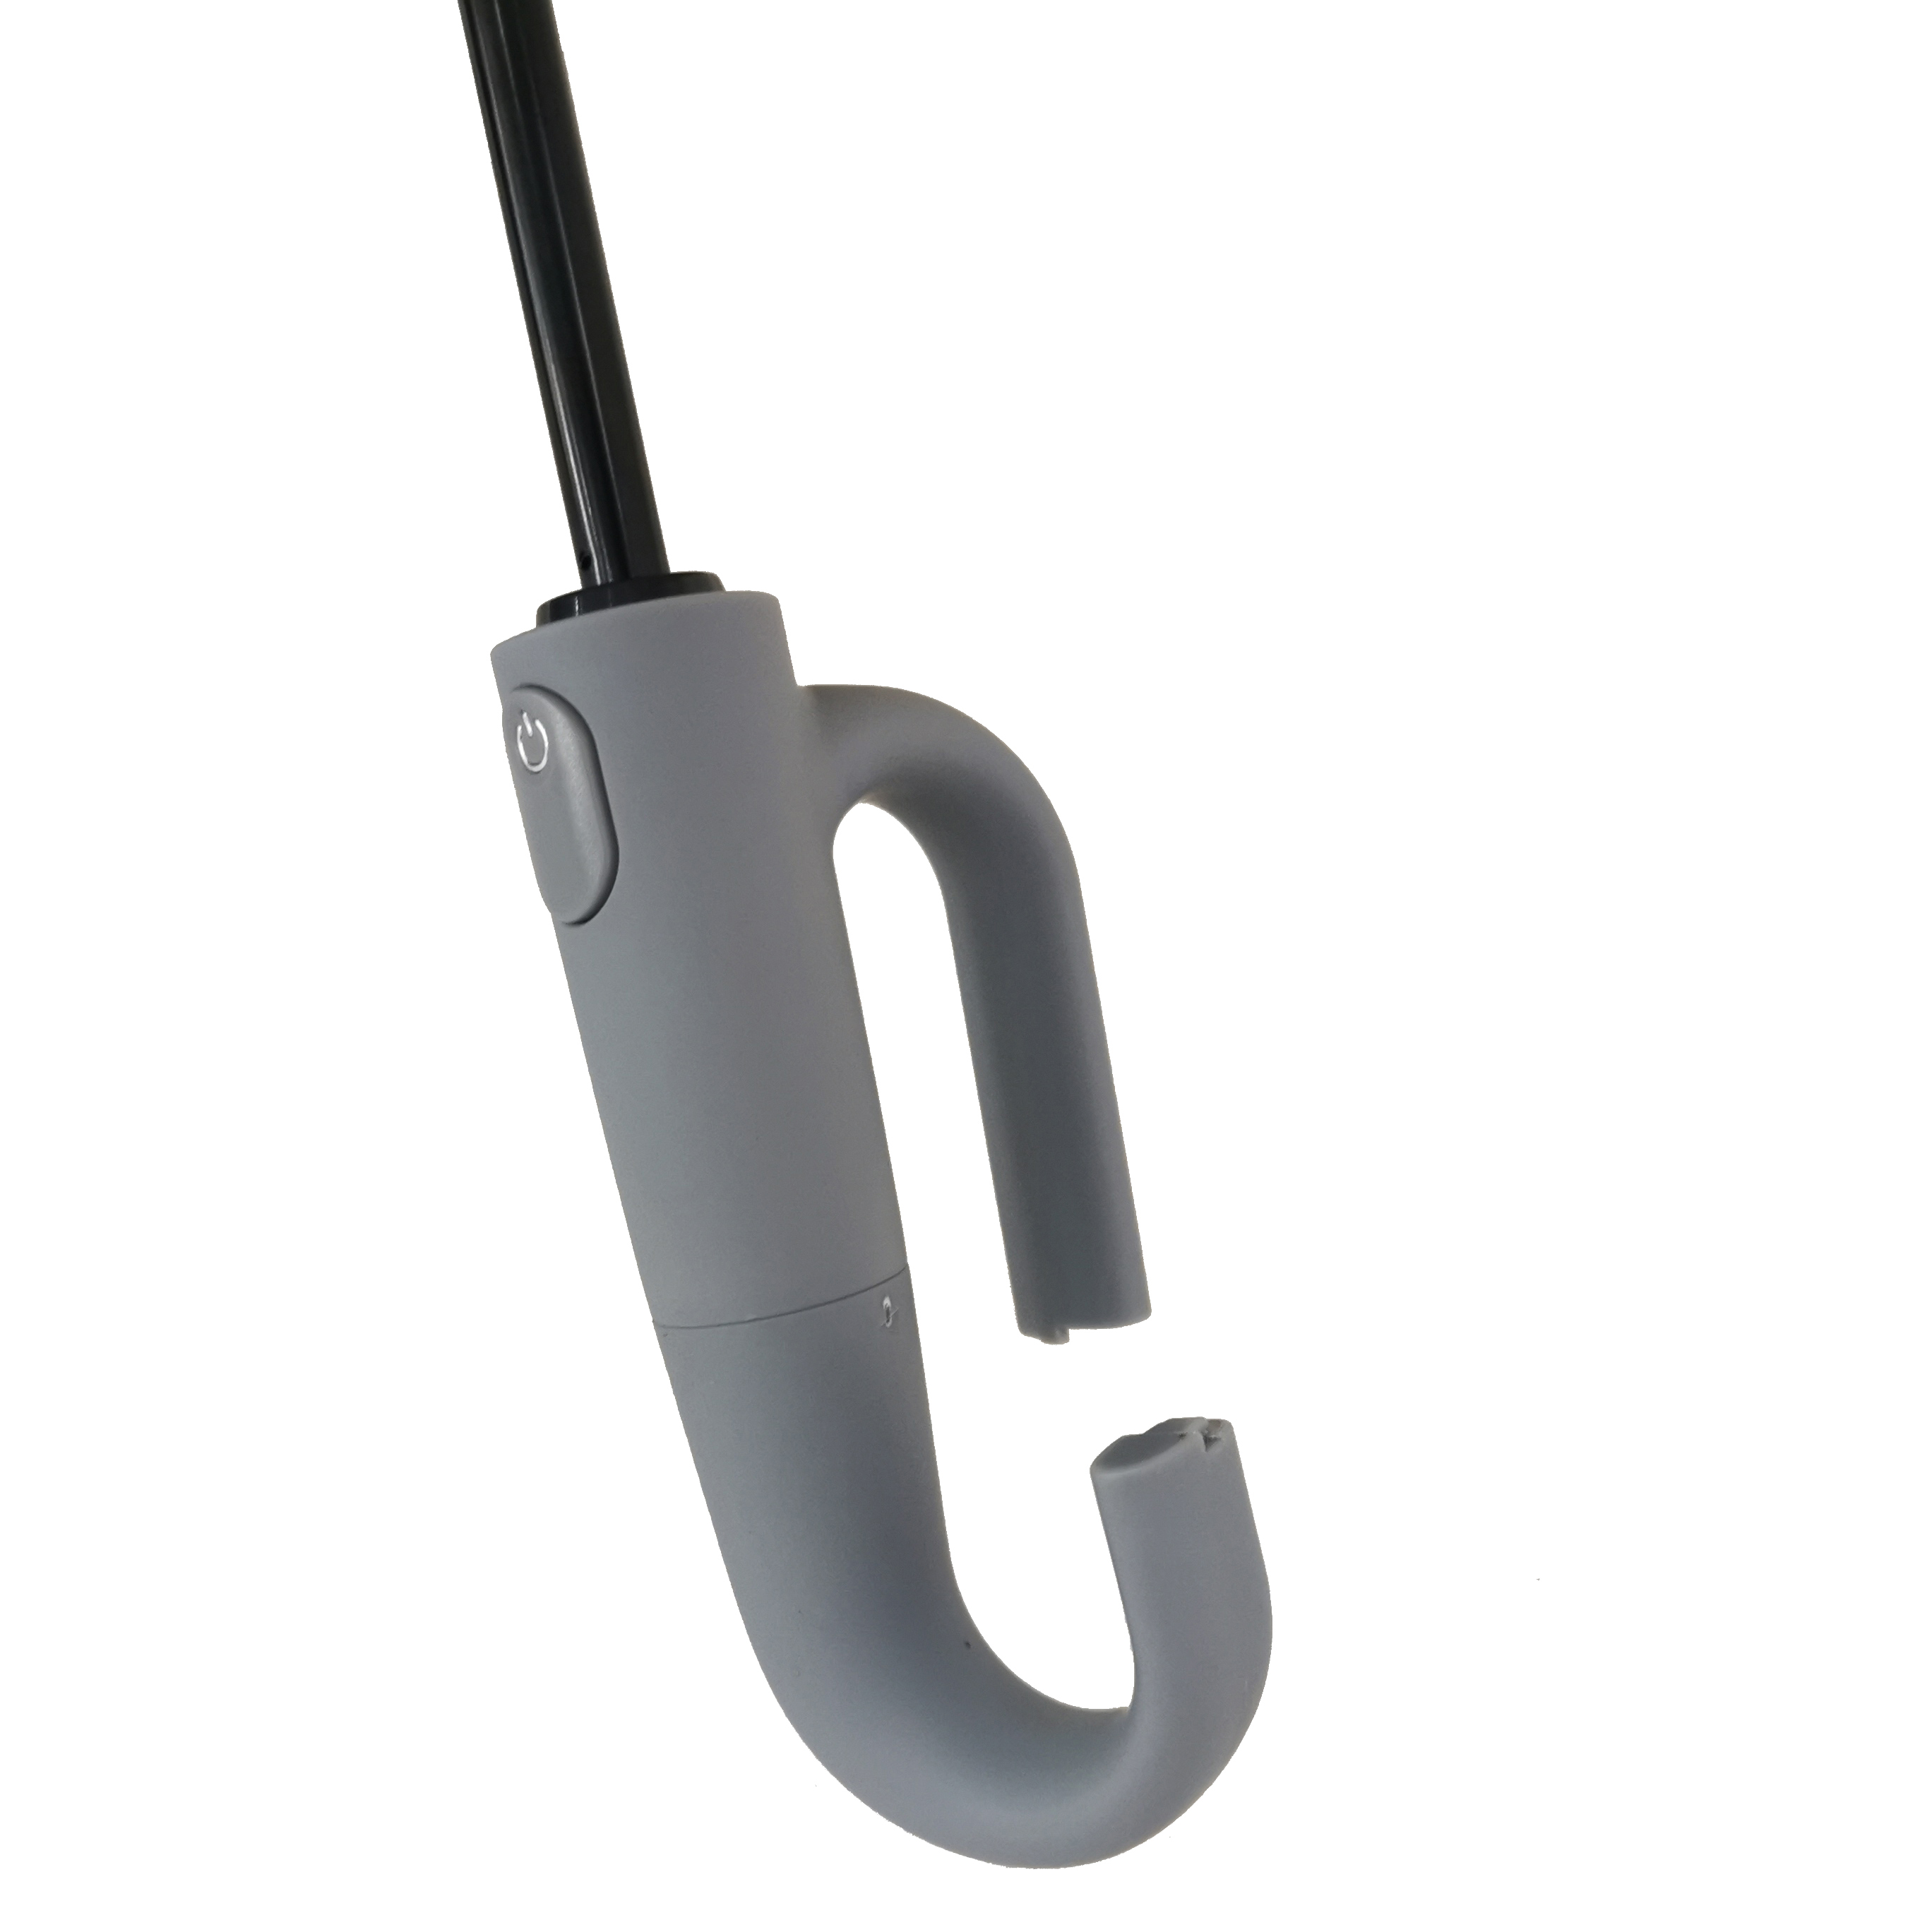 https://www.hodaumbrella.com/hook-up-lock-design-outdoor-zonbescherming-easy-to-travel-buckle-dual-opvouwbare-paraplu-product/